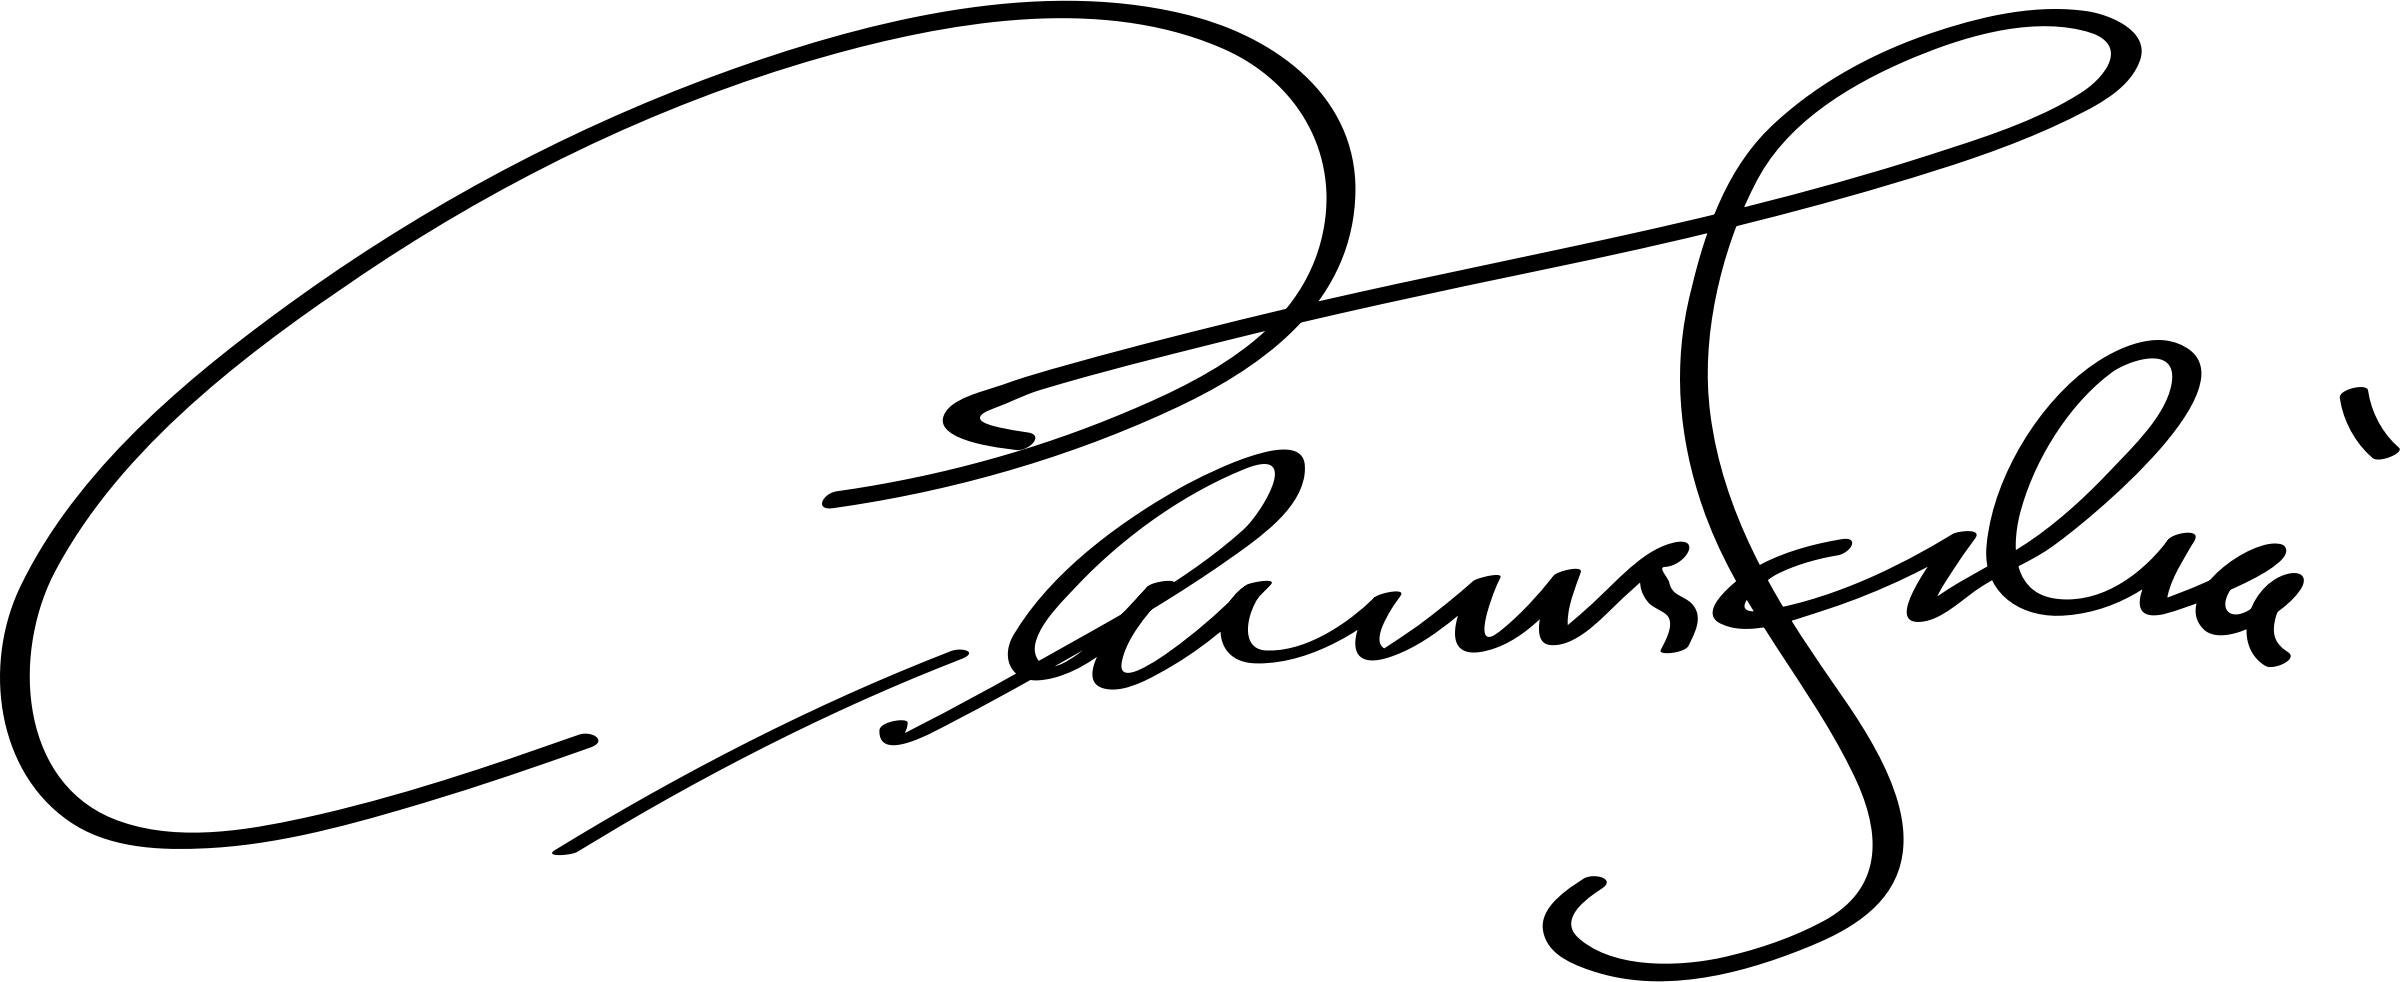 Antonin Scalia Signature png